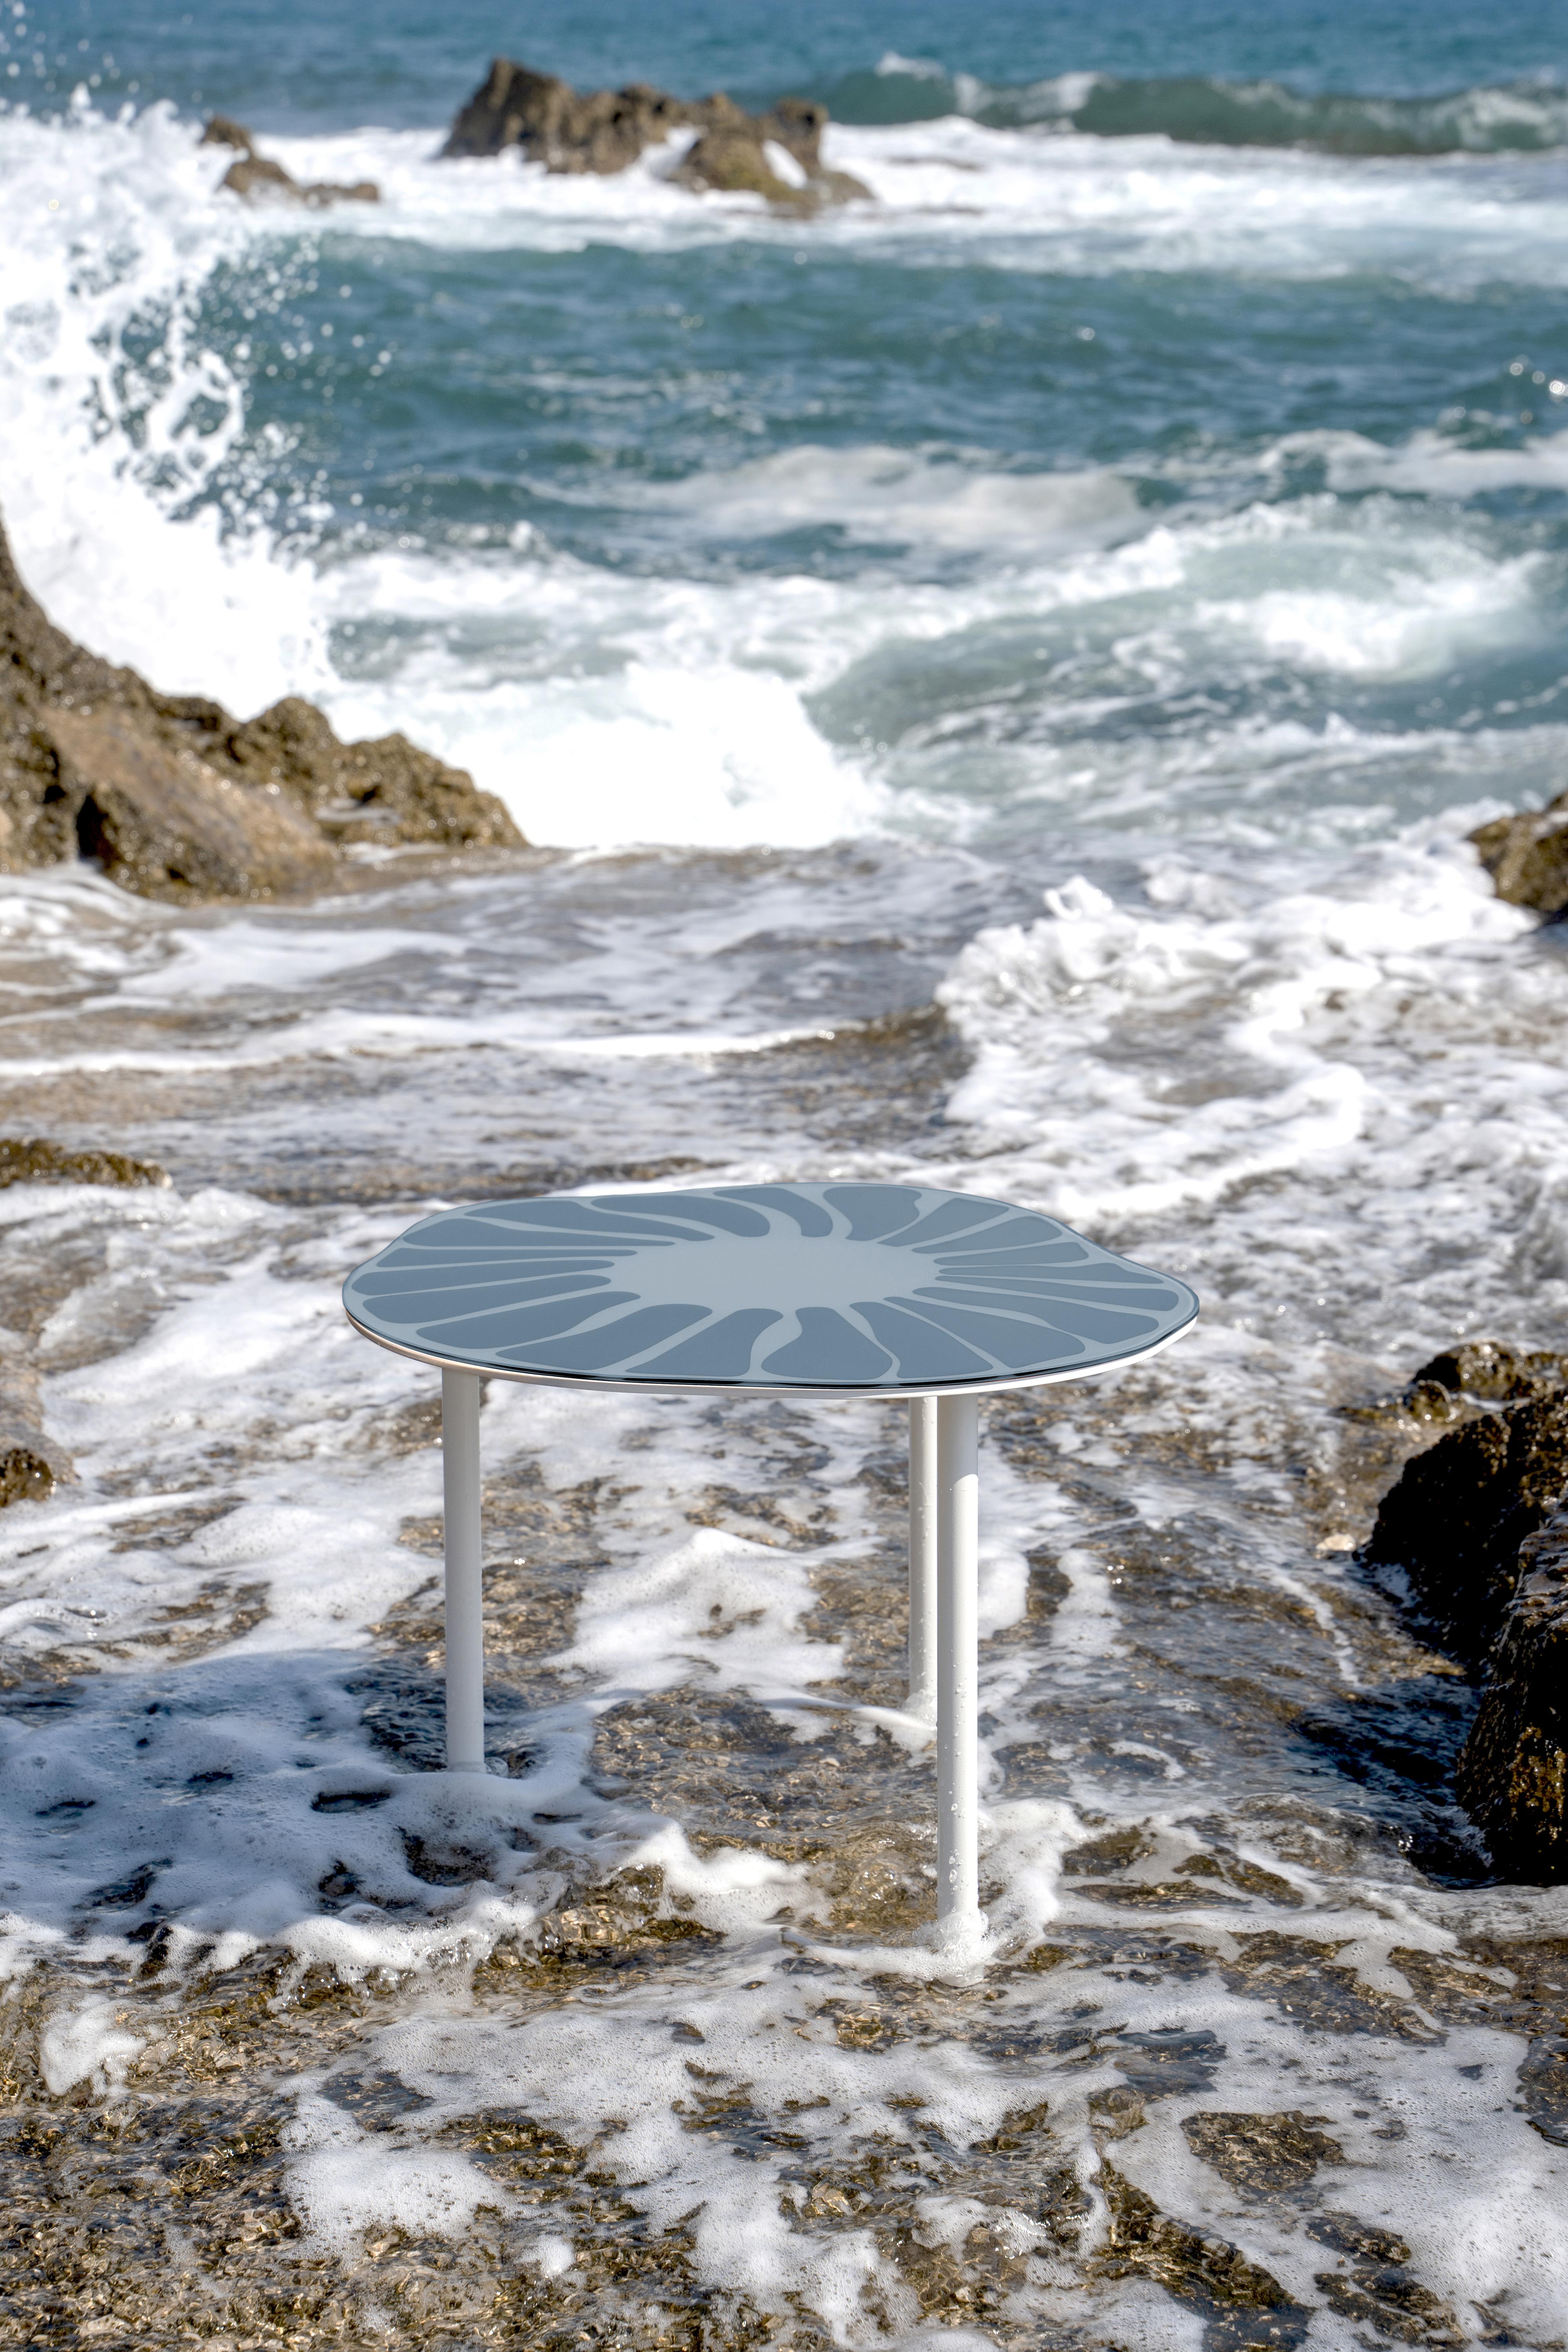 Cesareo è un coffee table realizzato in superfici specchianti, accuratamente selezionate, e metallo laccato con finitura opaca.
Il prodotto è caratterizzato da linee morbide ed ondulate che ricordano il mondo naturale.
La forma del tavolino ha